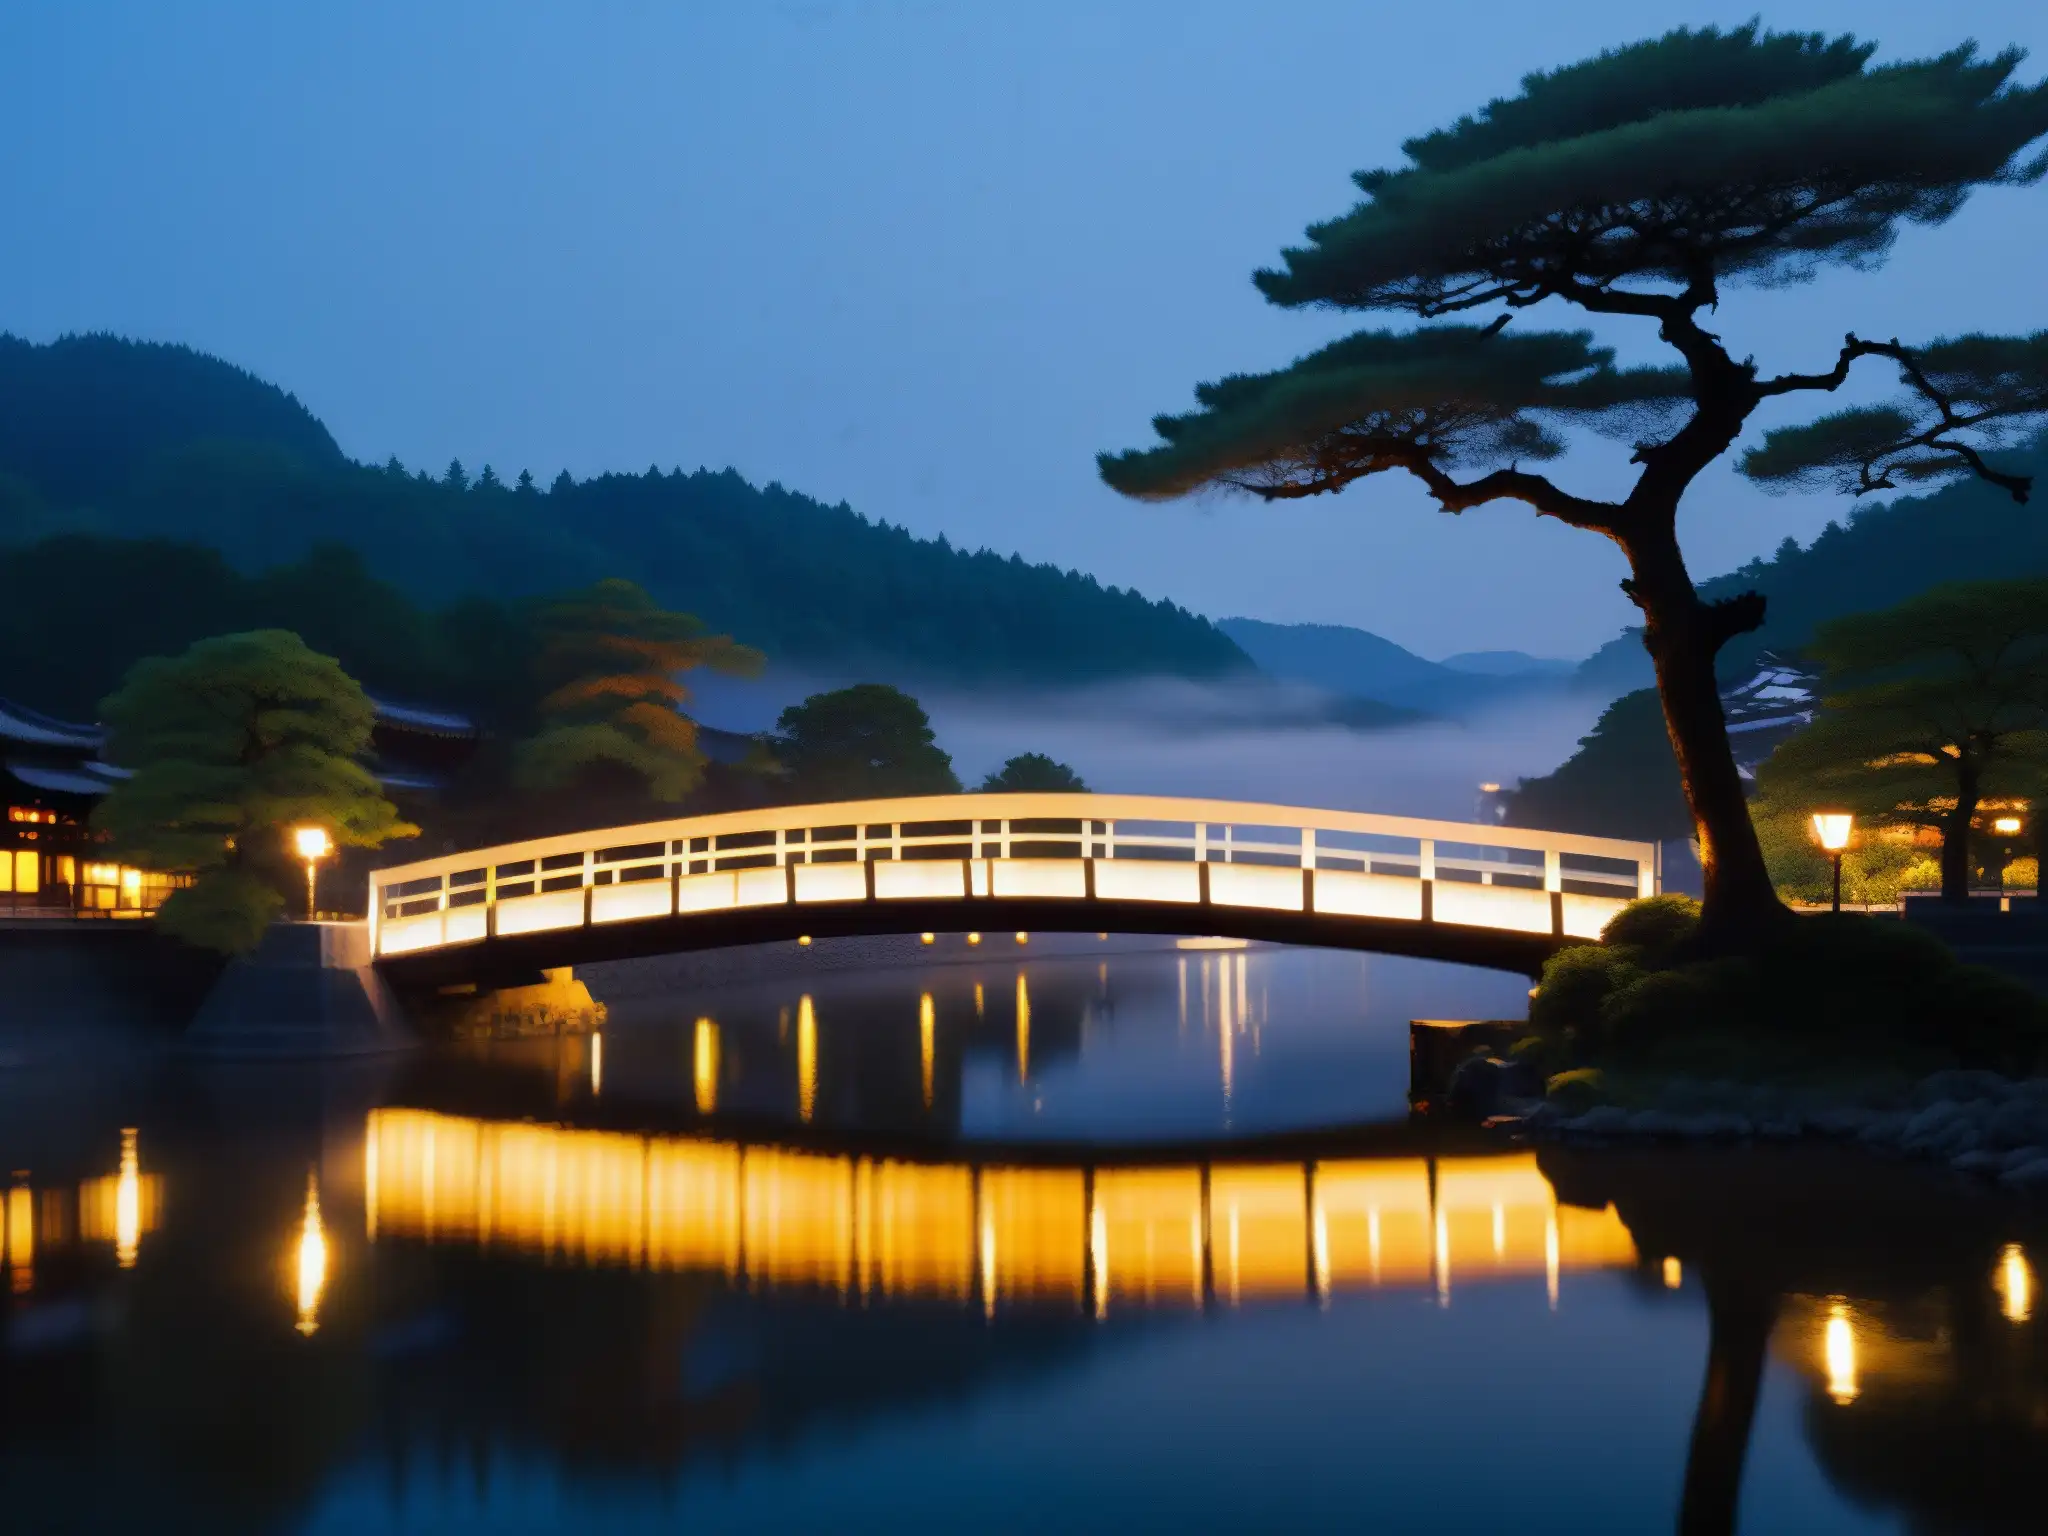 Encuentros paranormales en puente Inubashiri: Atmósfera misteriosa al anochecer, con neblina y luces cálidas iluminando el puente y el río